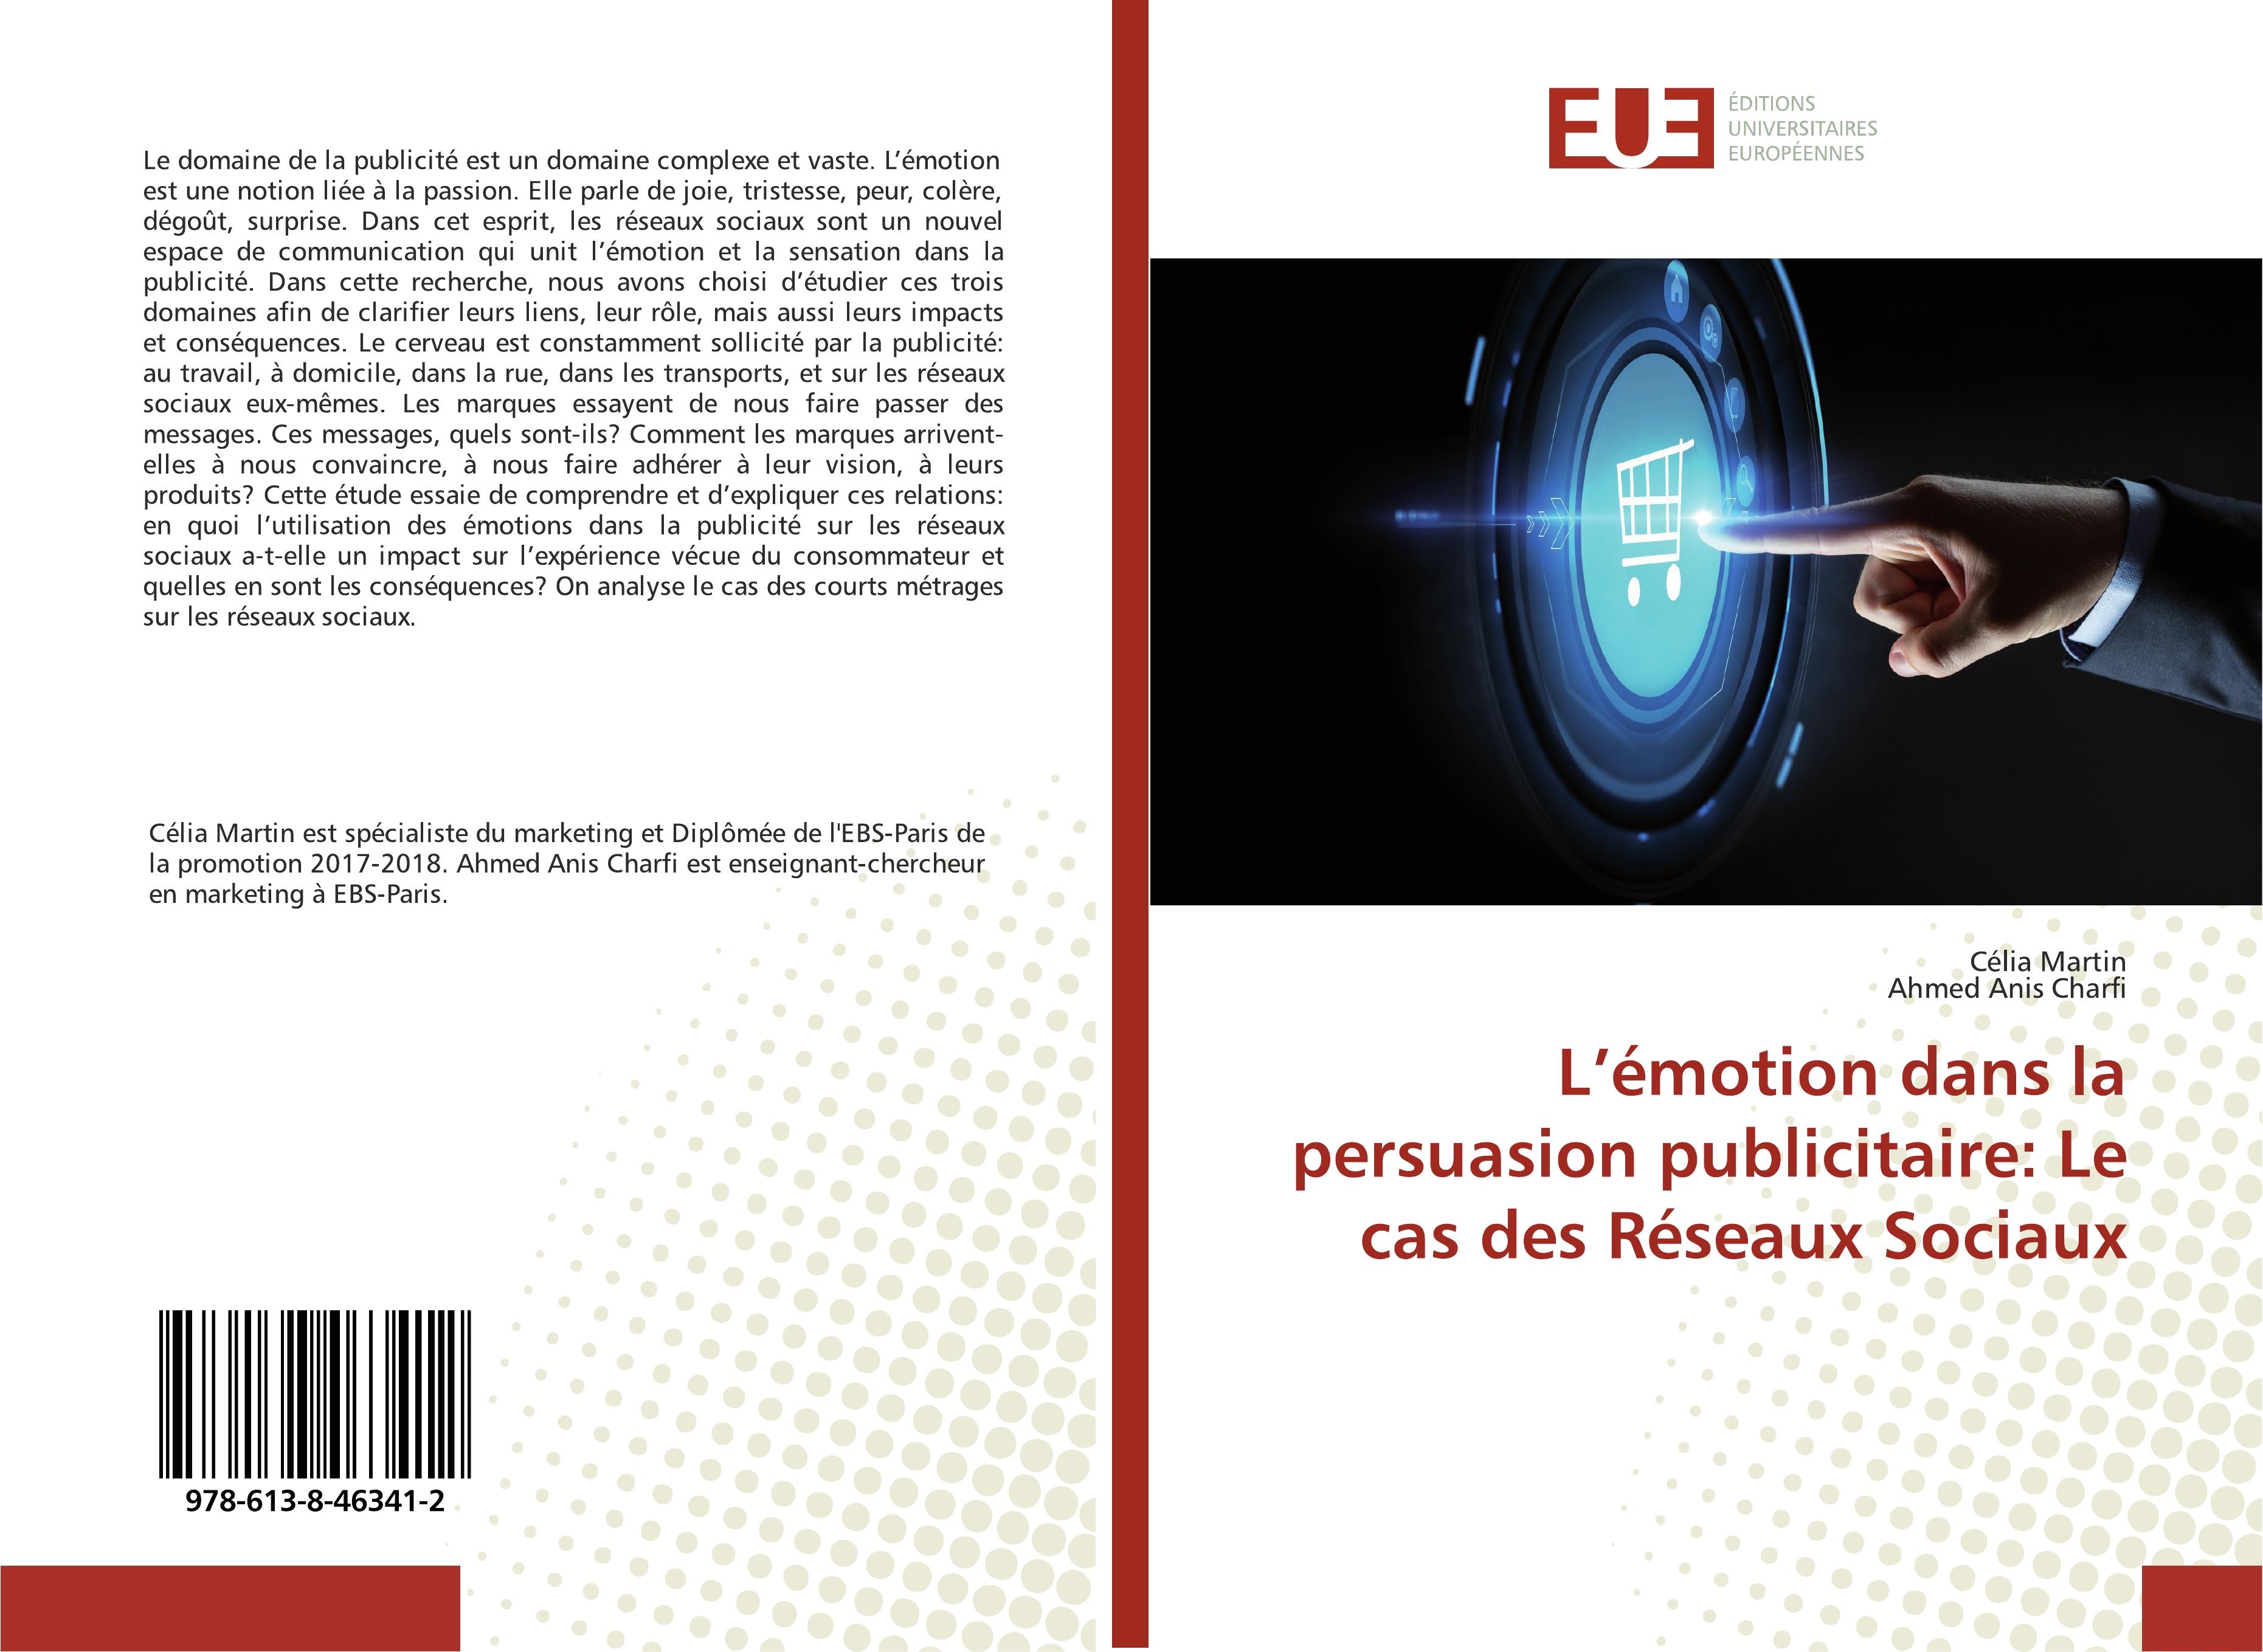 L émotion dans la persuasion publicitaire: Le cas des Réseaux Sociaux - Célia Martin Ahmed Anis Charfi